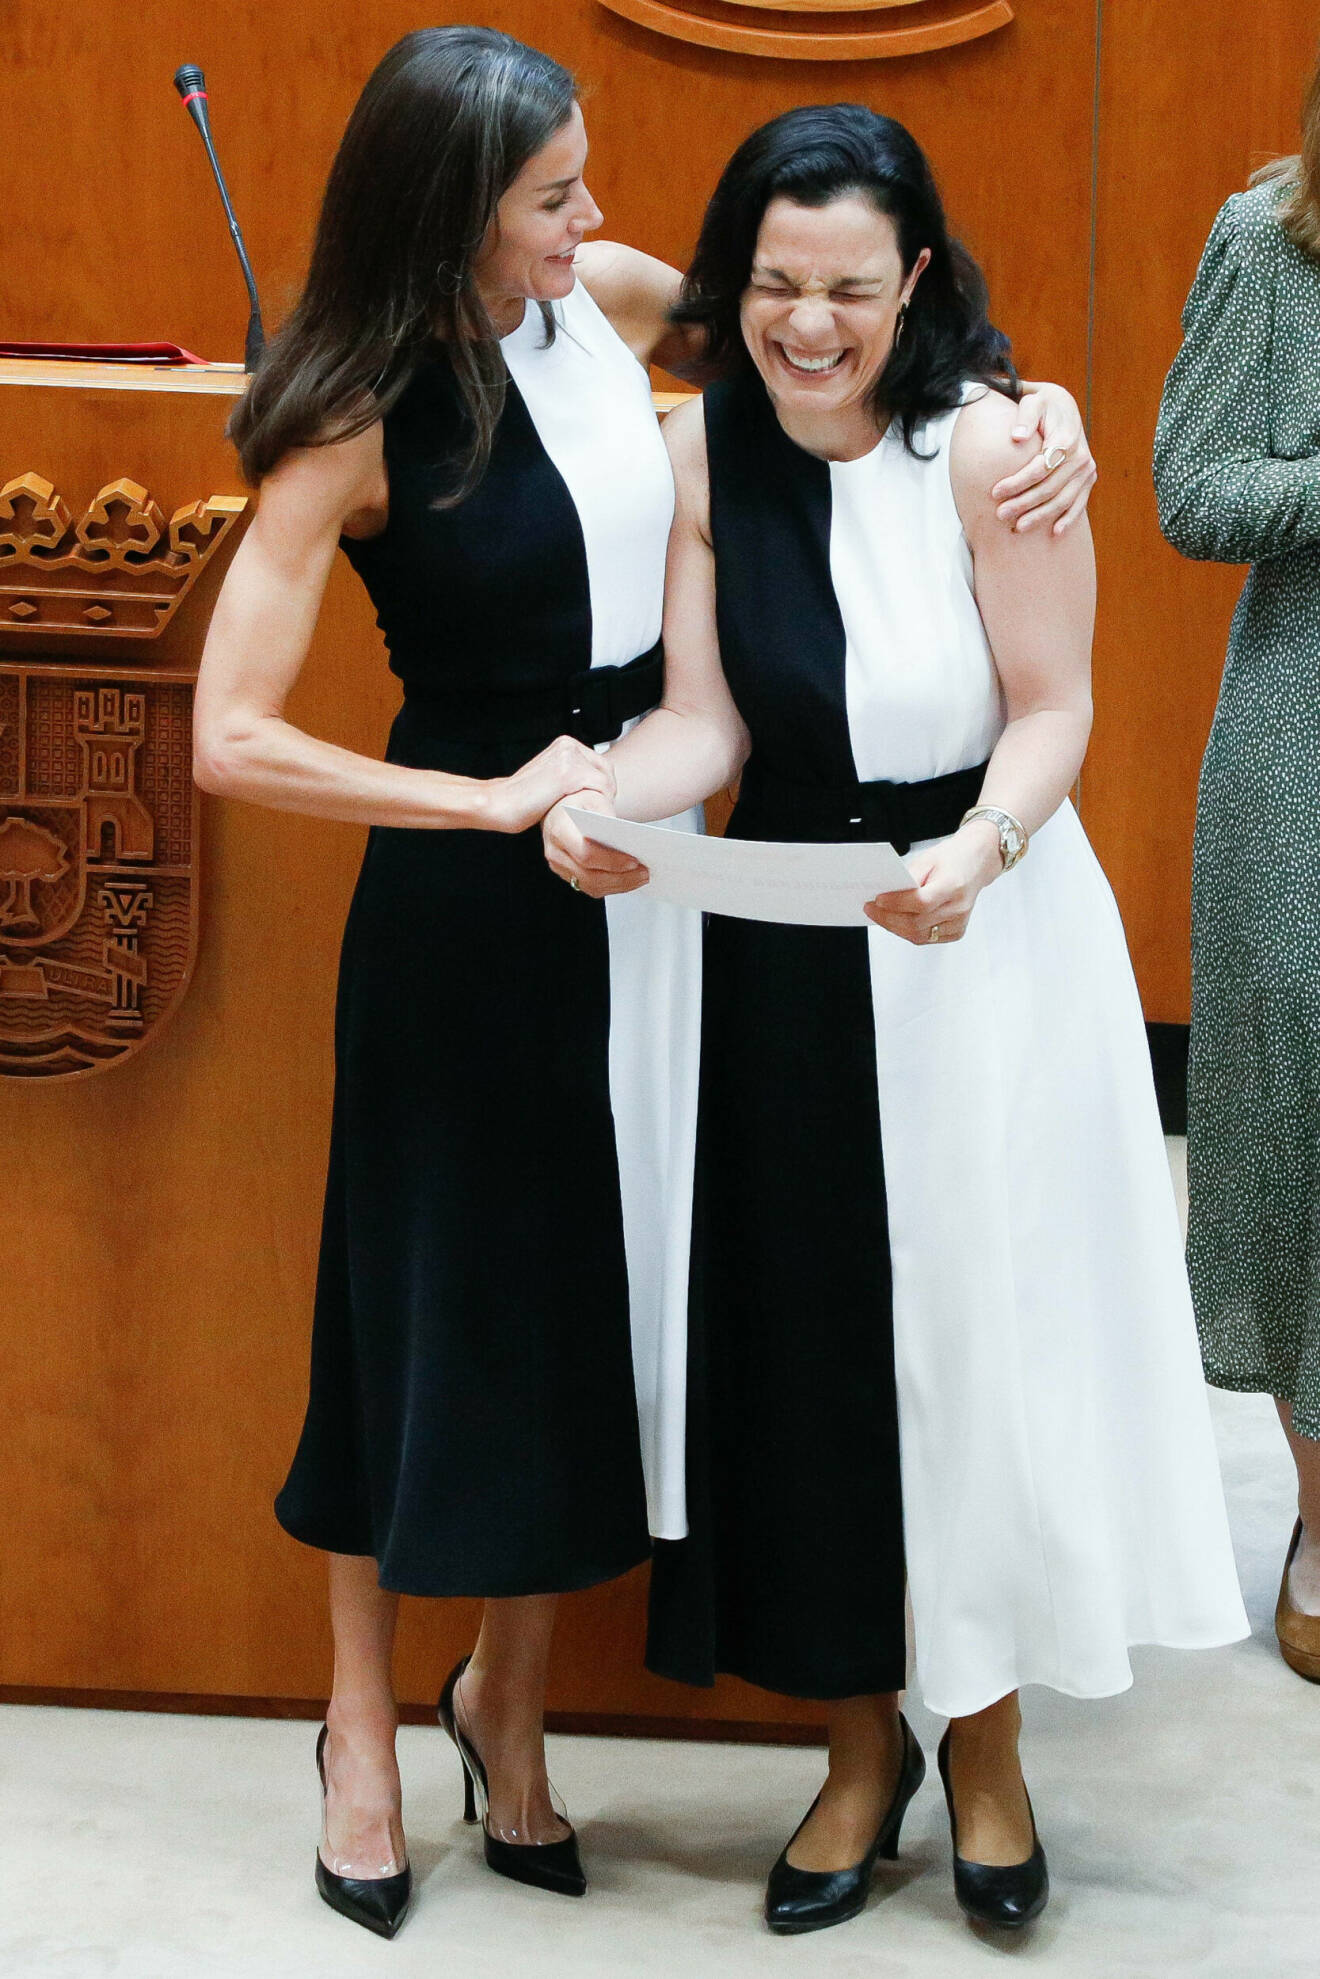 Drottning Letizia och Inmaculada Vivas-Tesón i samma klänning från Mango. I likadana klänningar